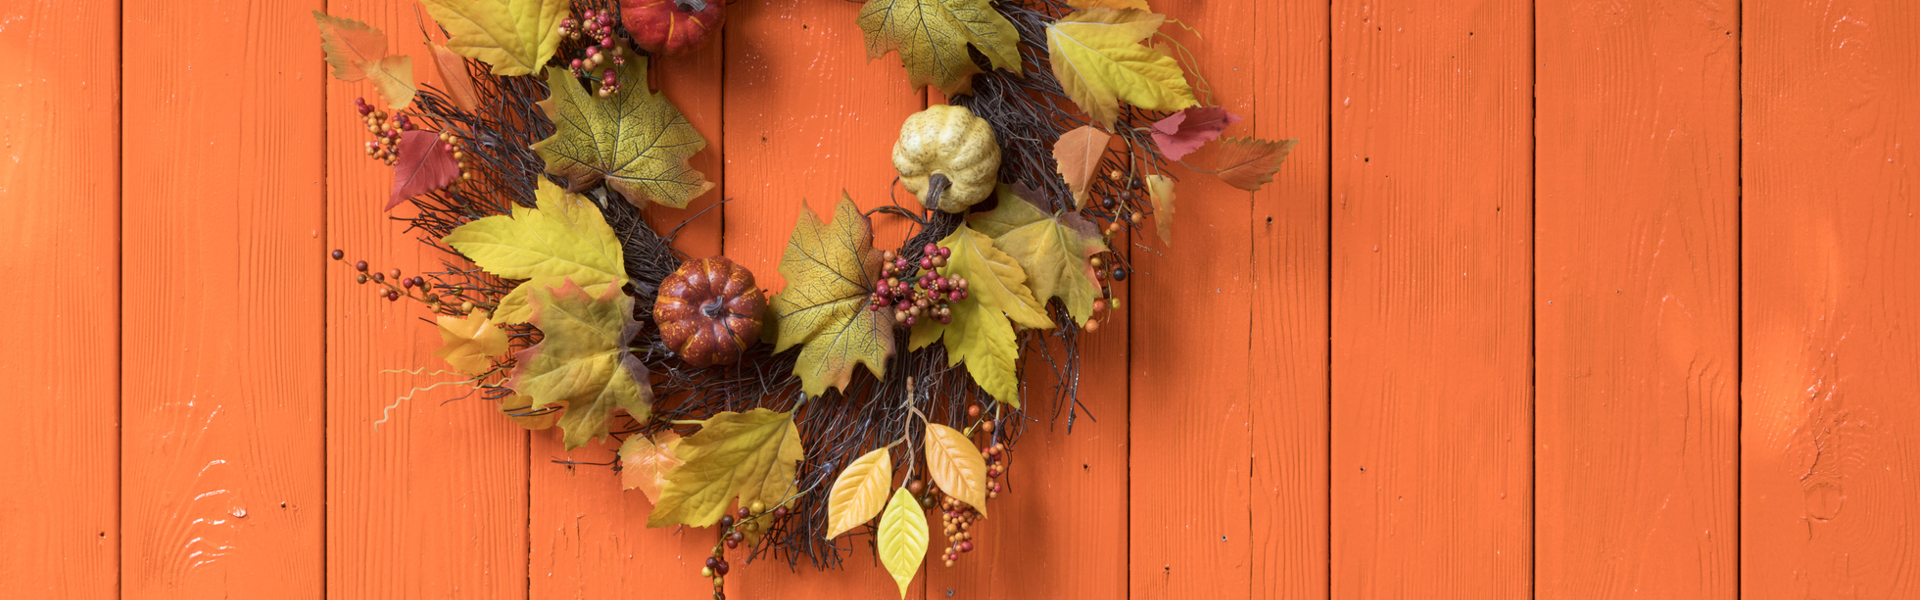 An autumn leaf wreath on a wooden fence